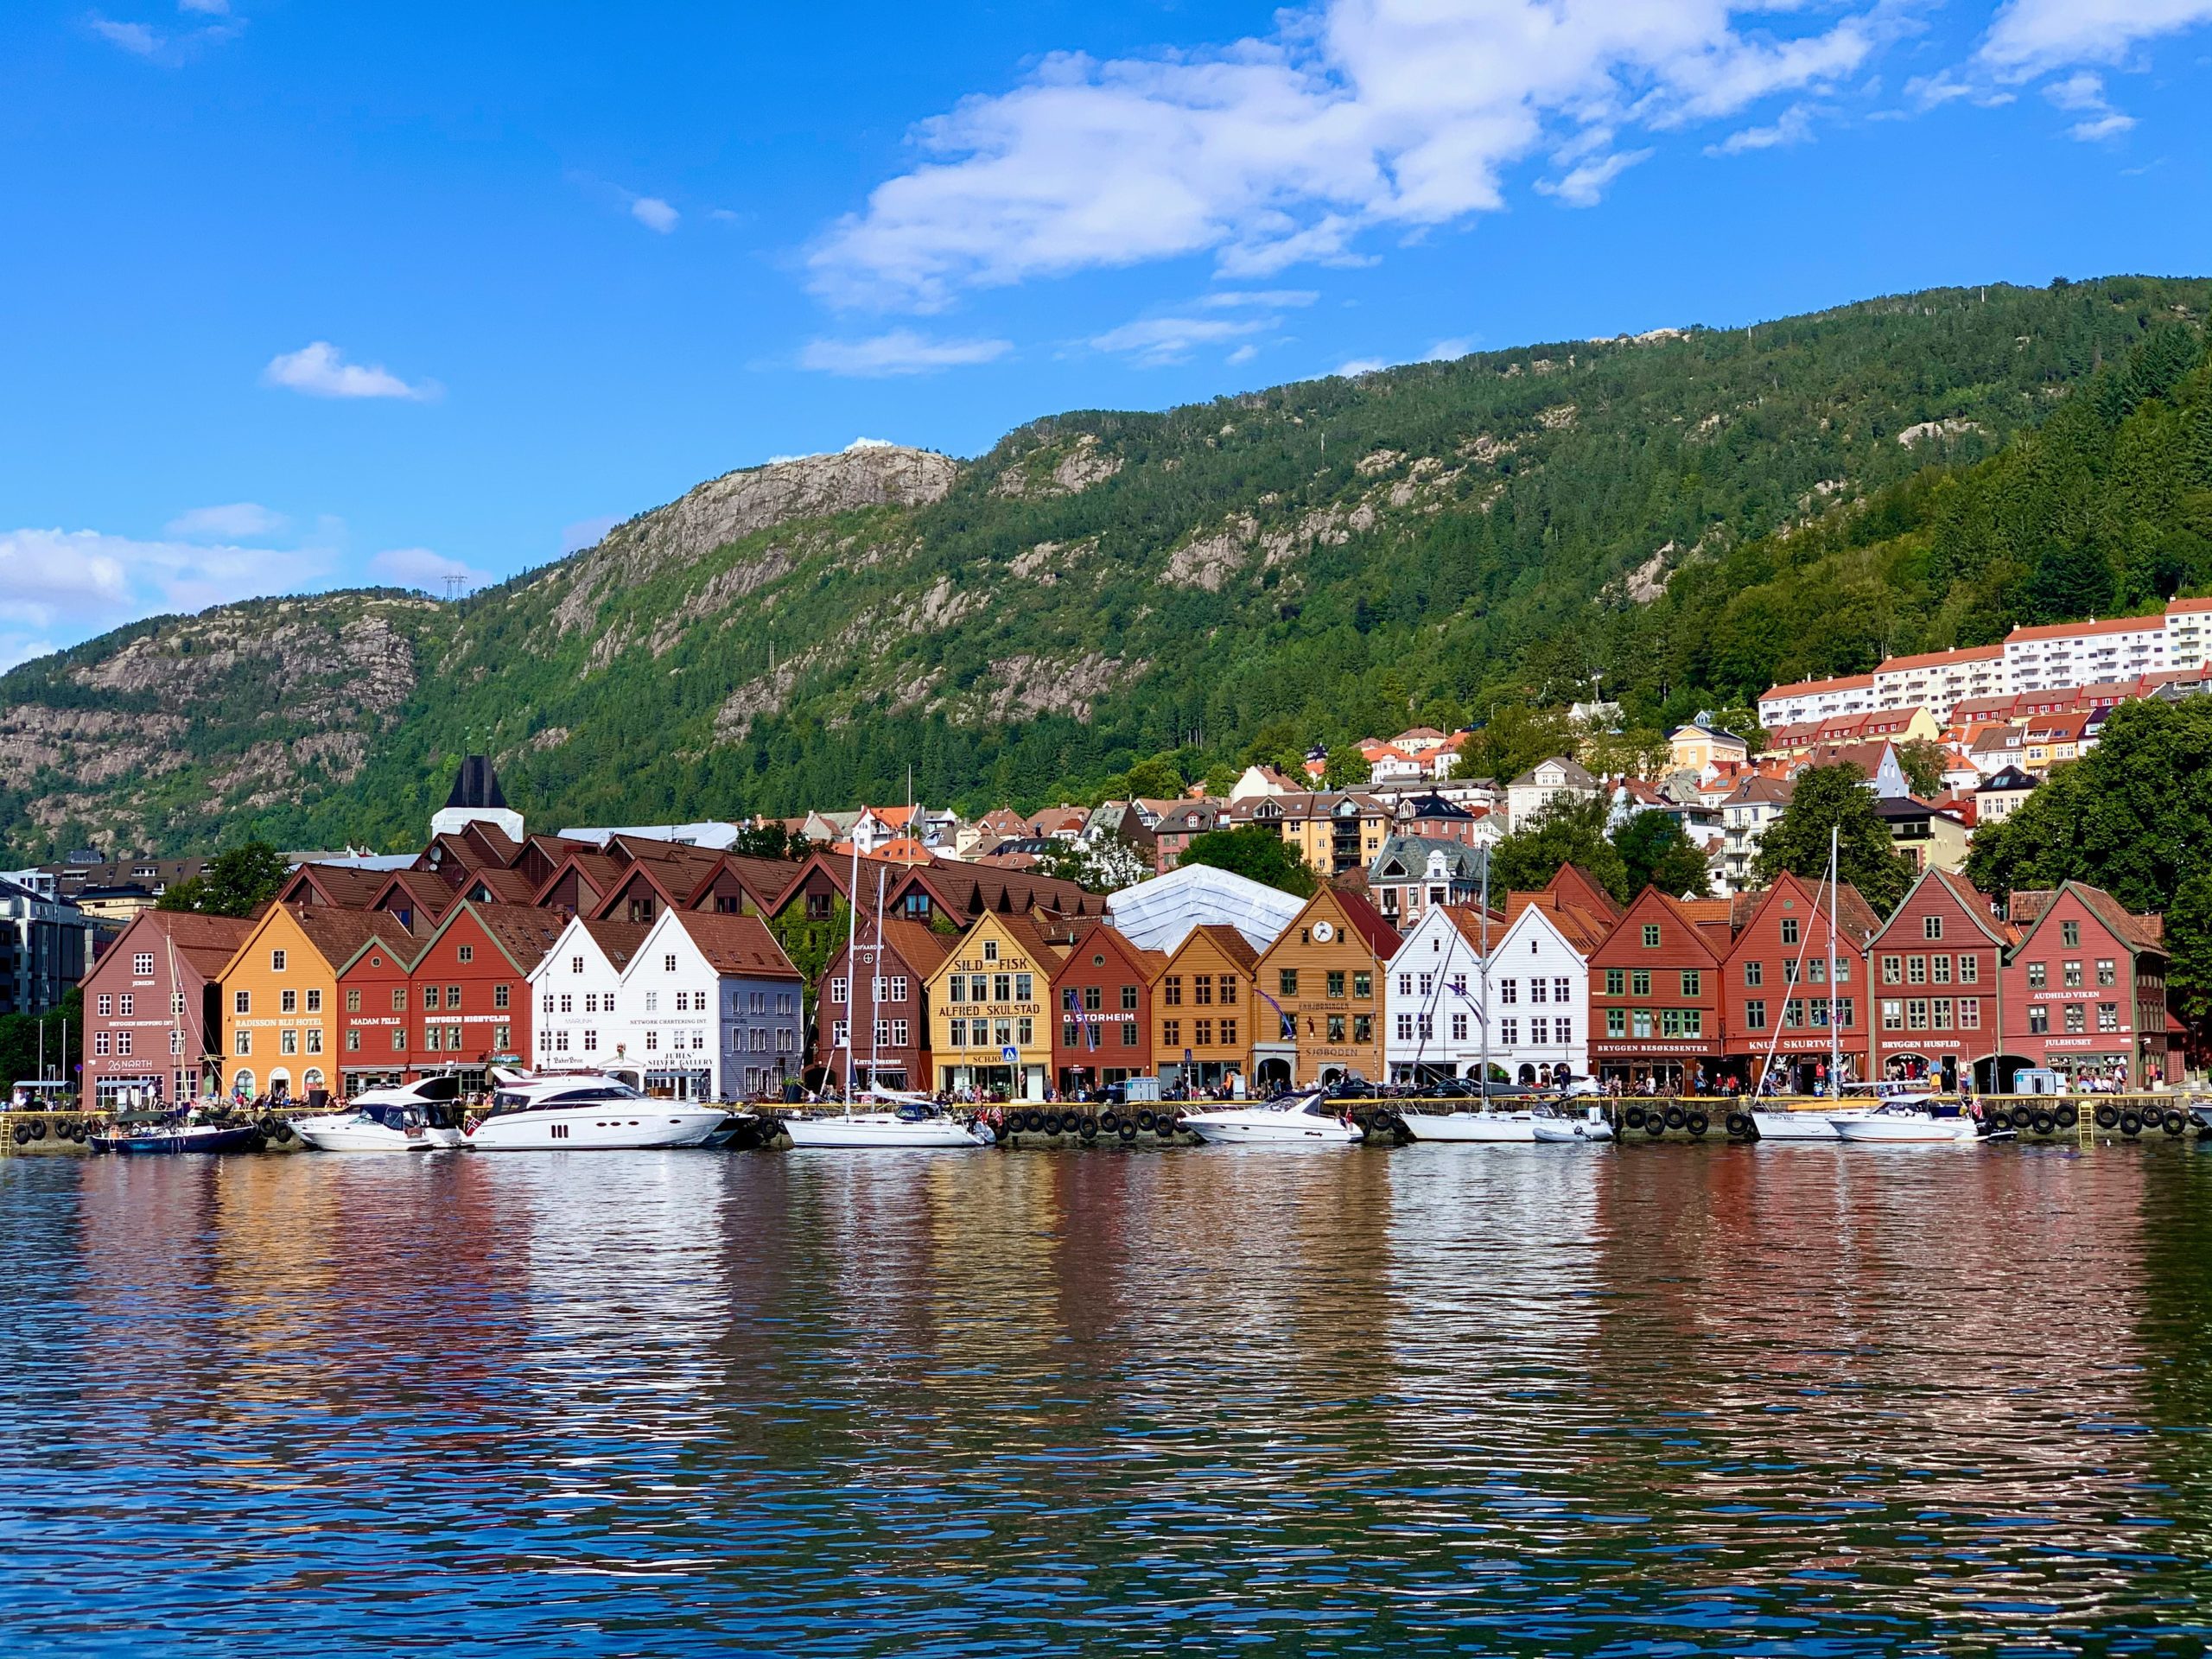 Bryggen is a historic harbour district in Bergen, Norway